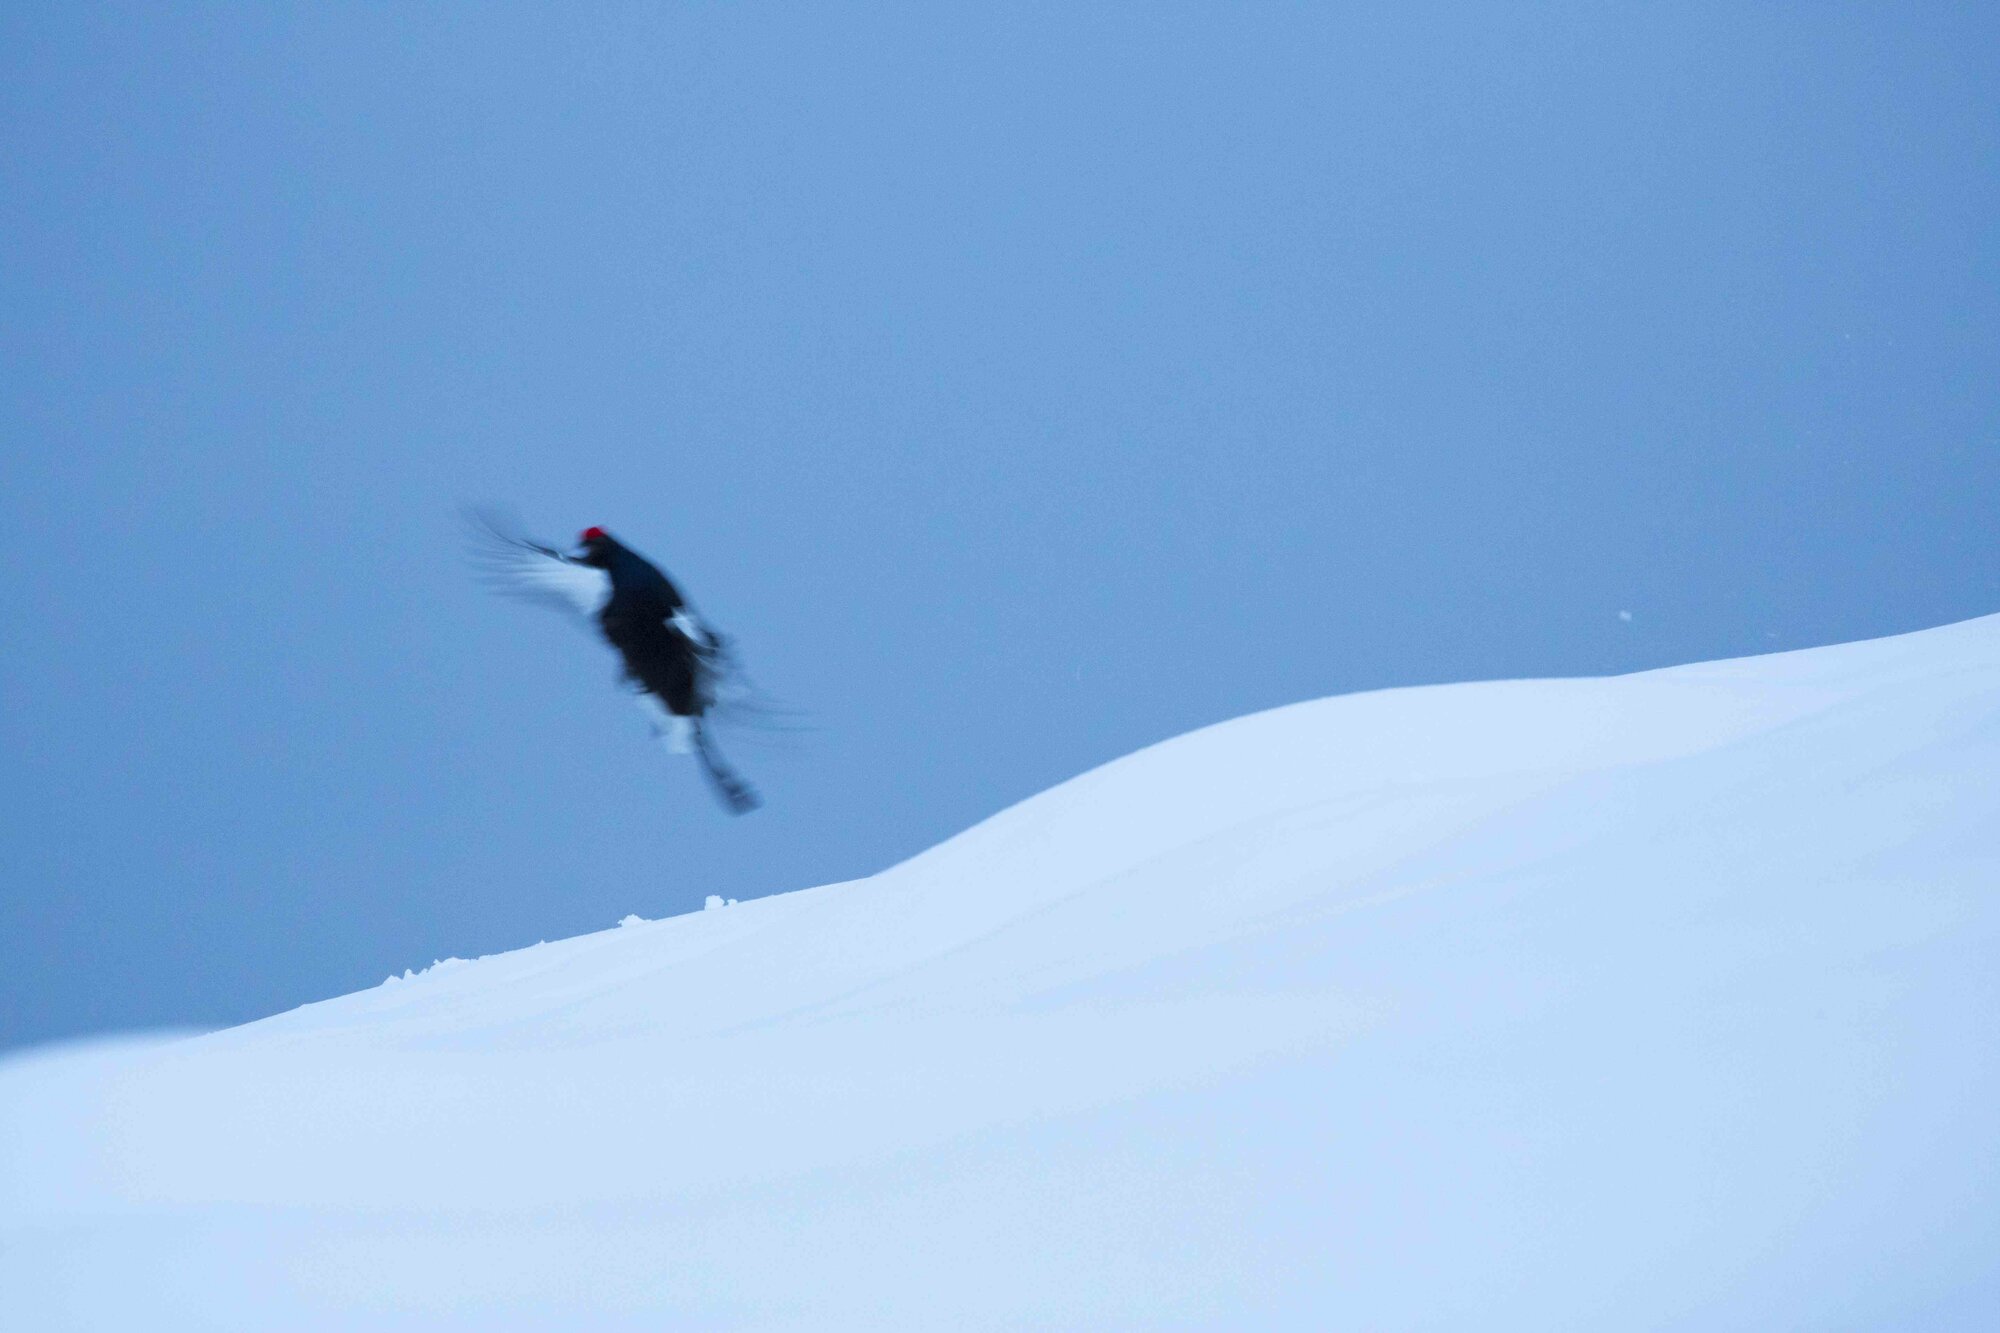 Black grouse in flight